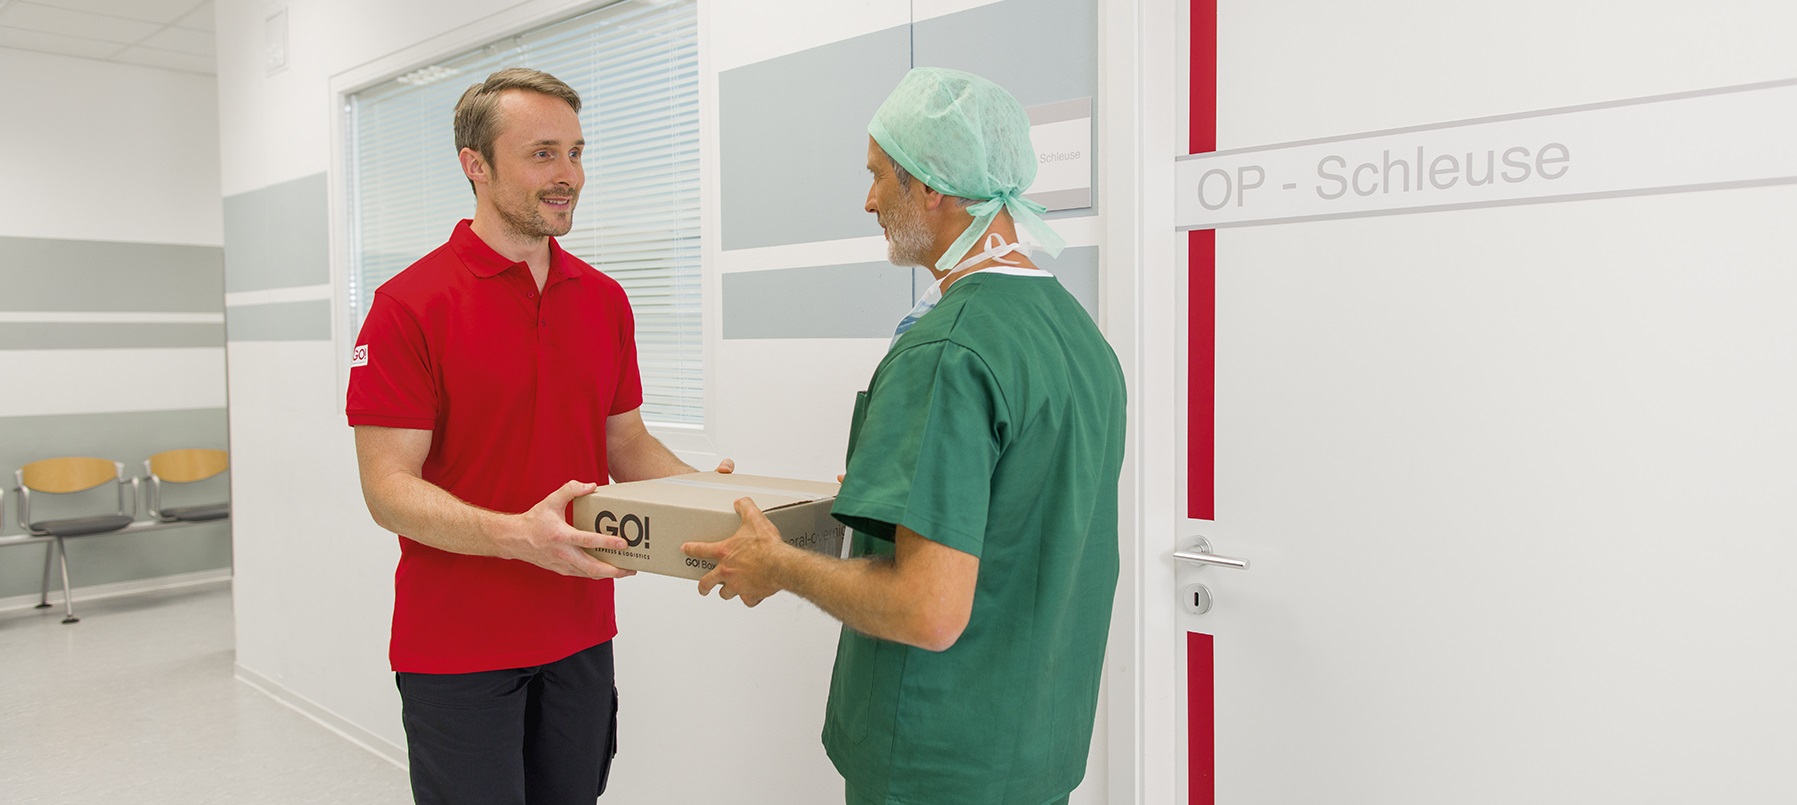 GO! Kurier übergibt Paket an einer OP-Schleuse im Krankenhaus an einen operationstechnischen Assistententen